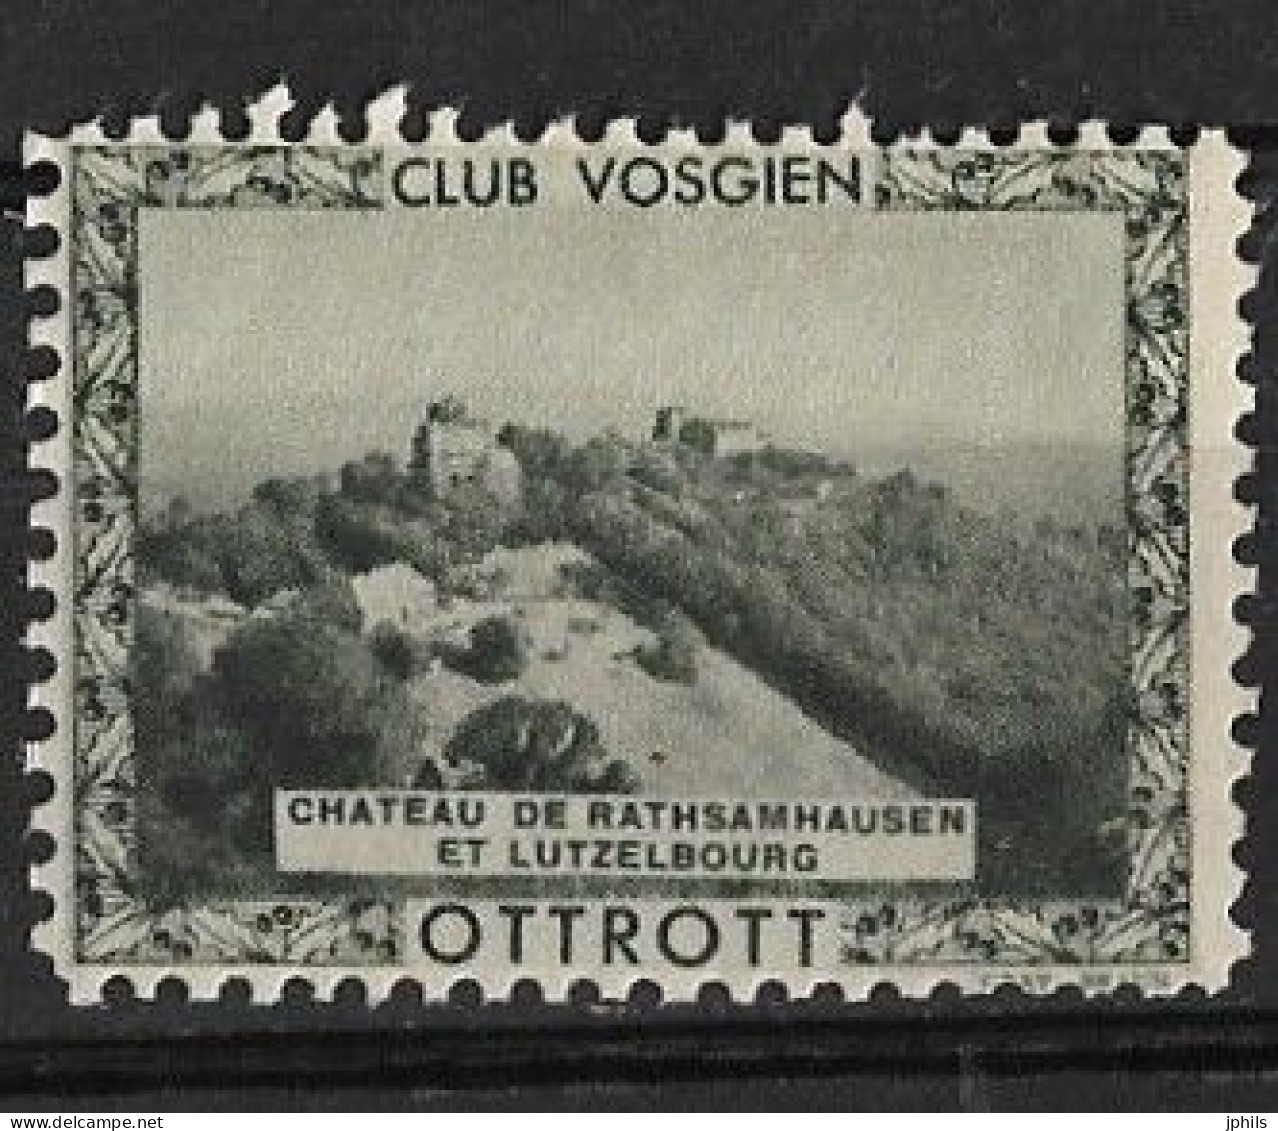 CLUB VOSGIEN OTTROTT ** CHATEAU DE RATHSAMHAUSEN ET LUTZELBOURG - Tourismus (Vignetten)